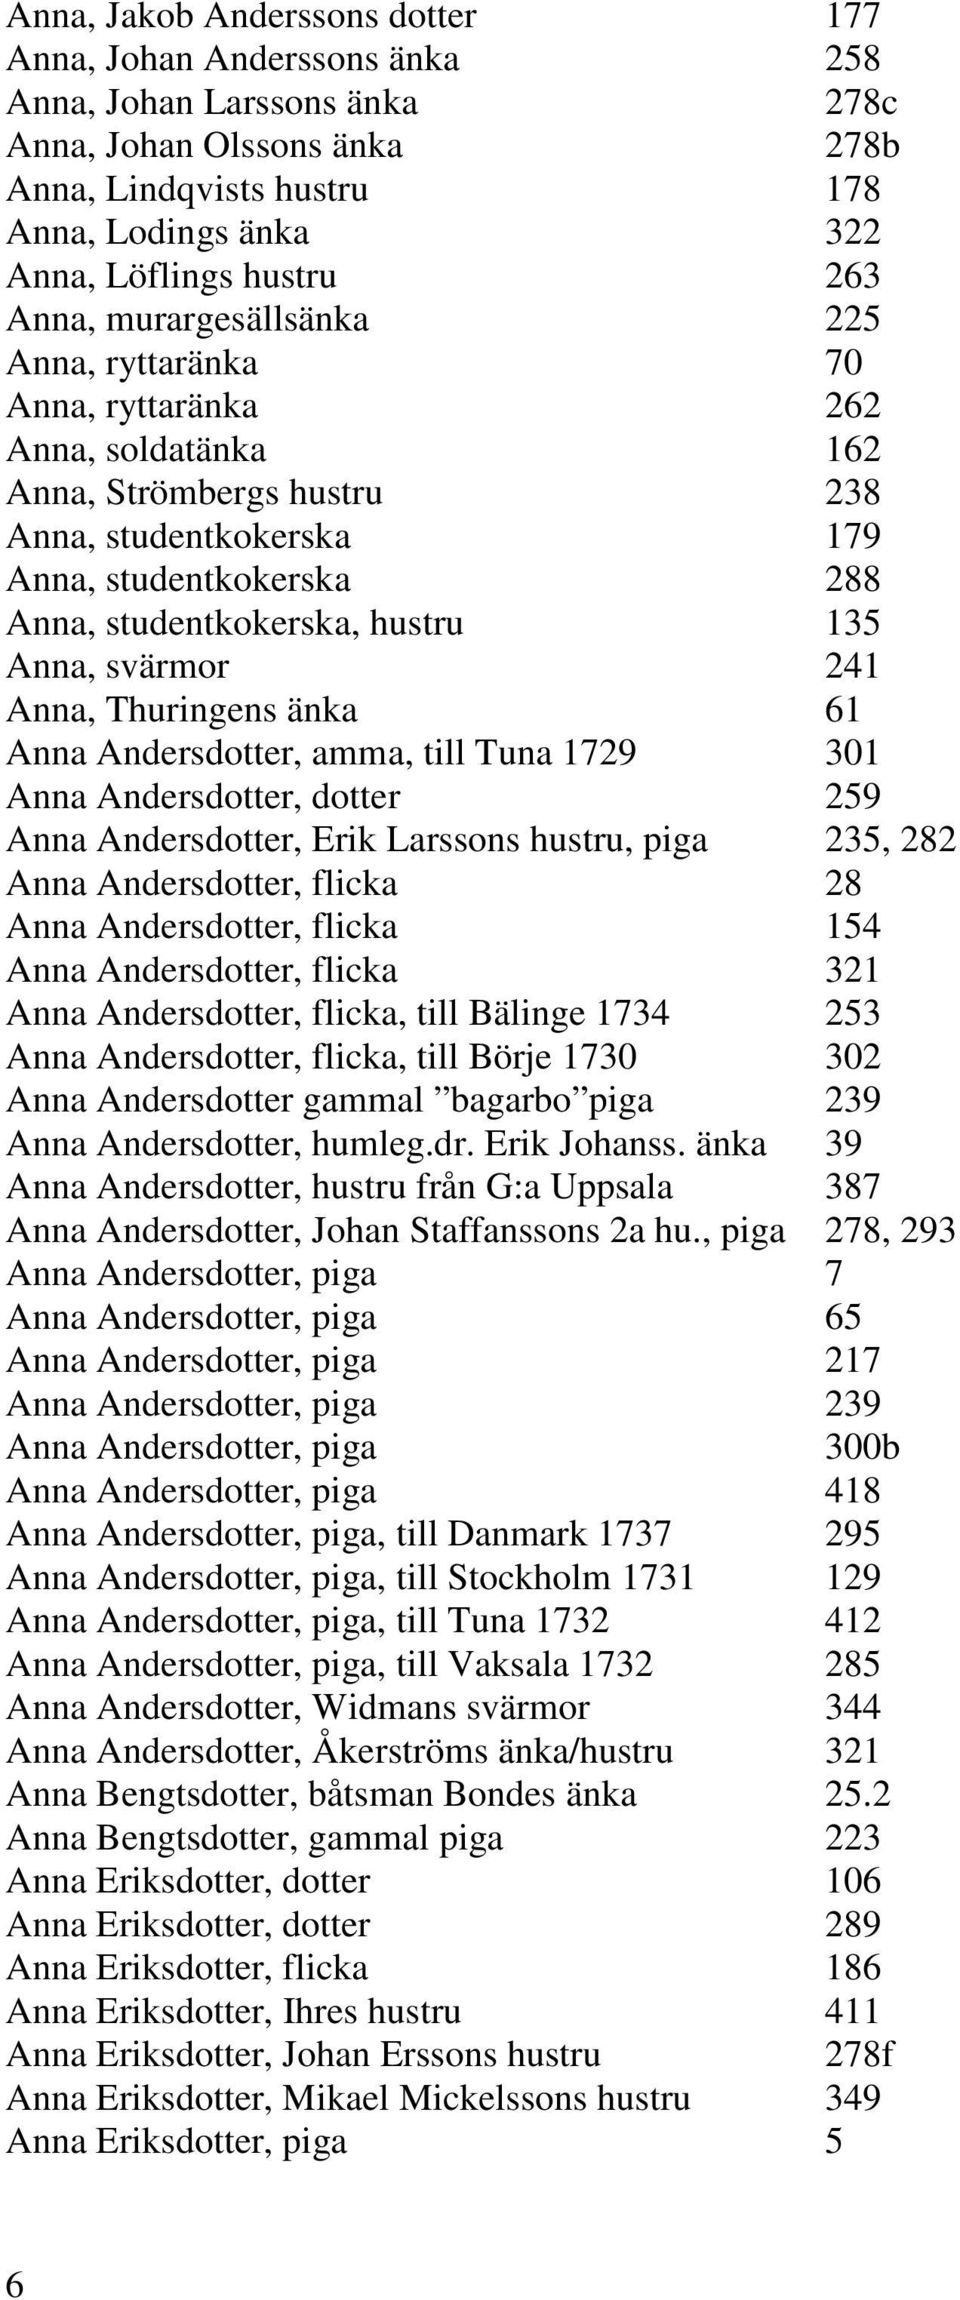 hustru 135 Anna, svärmor 241 Anna, Thuringens änka 61 Anna Andersdotter, amma, till Tuna 1729 301 Anna Andersdotter, dotter 259 Anna Andersdotter, Erik Larssons hustru, piga 235, 282 Anna